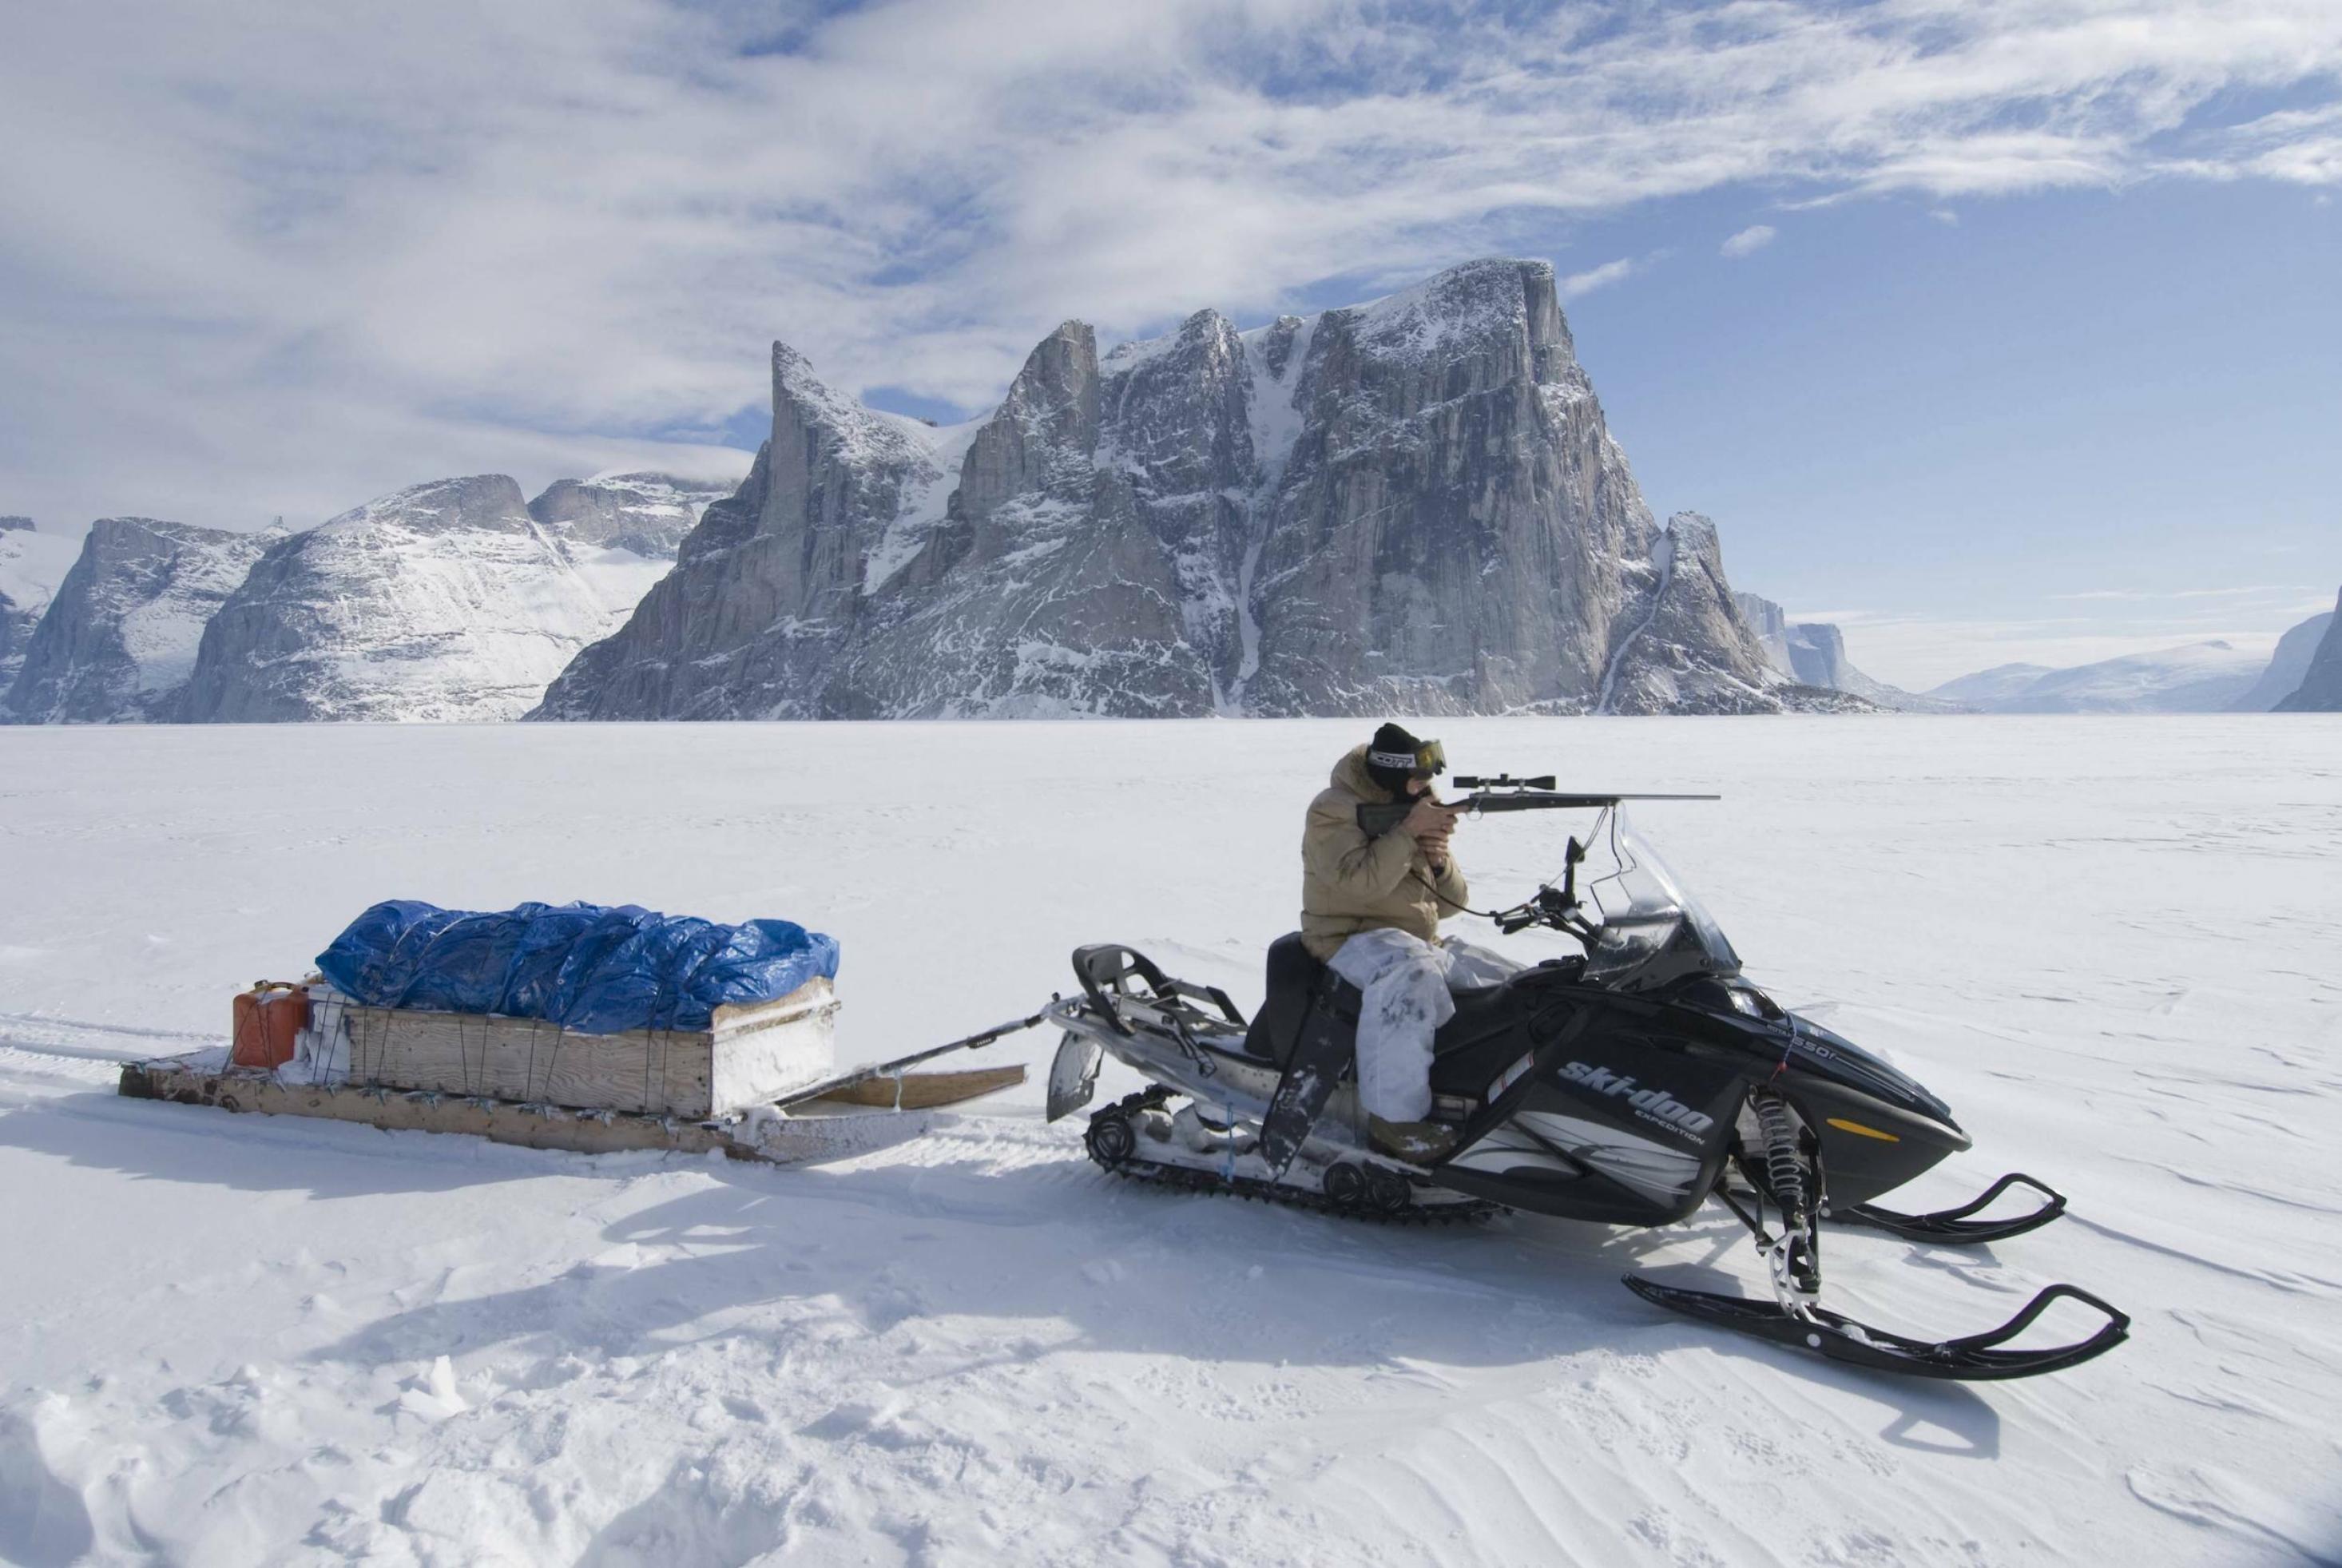 In einer schneebedeckten Landschaft mit hohen Bergen sitzt ein Inuit auf einem Motorschlitten und zielt mit einem Gewehr in die Ferne.